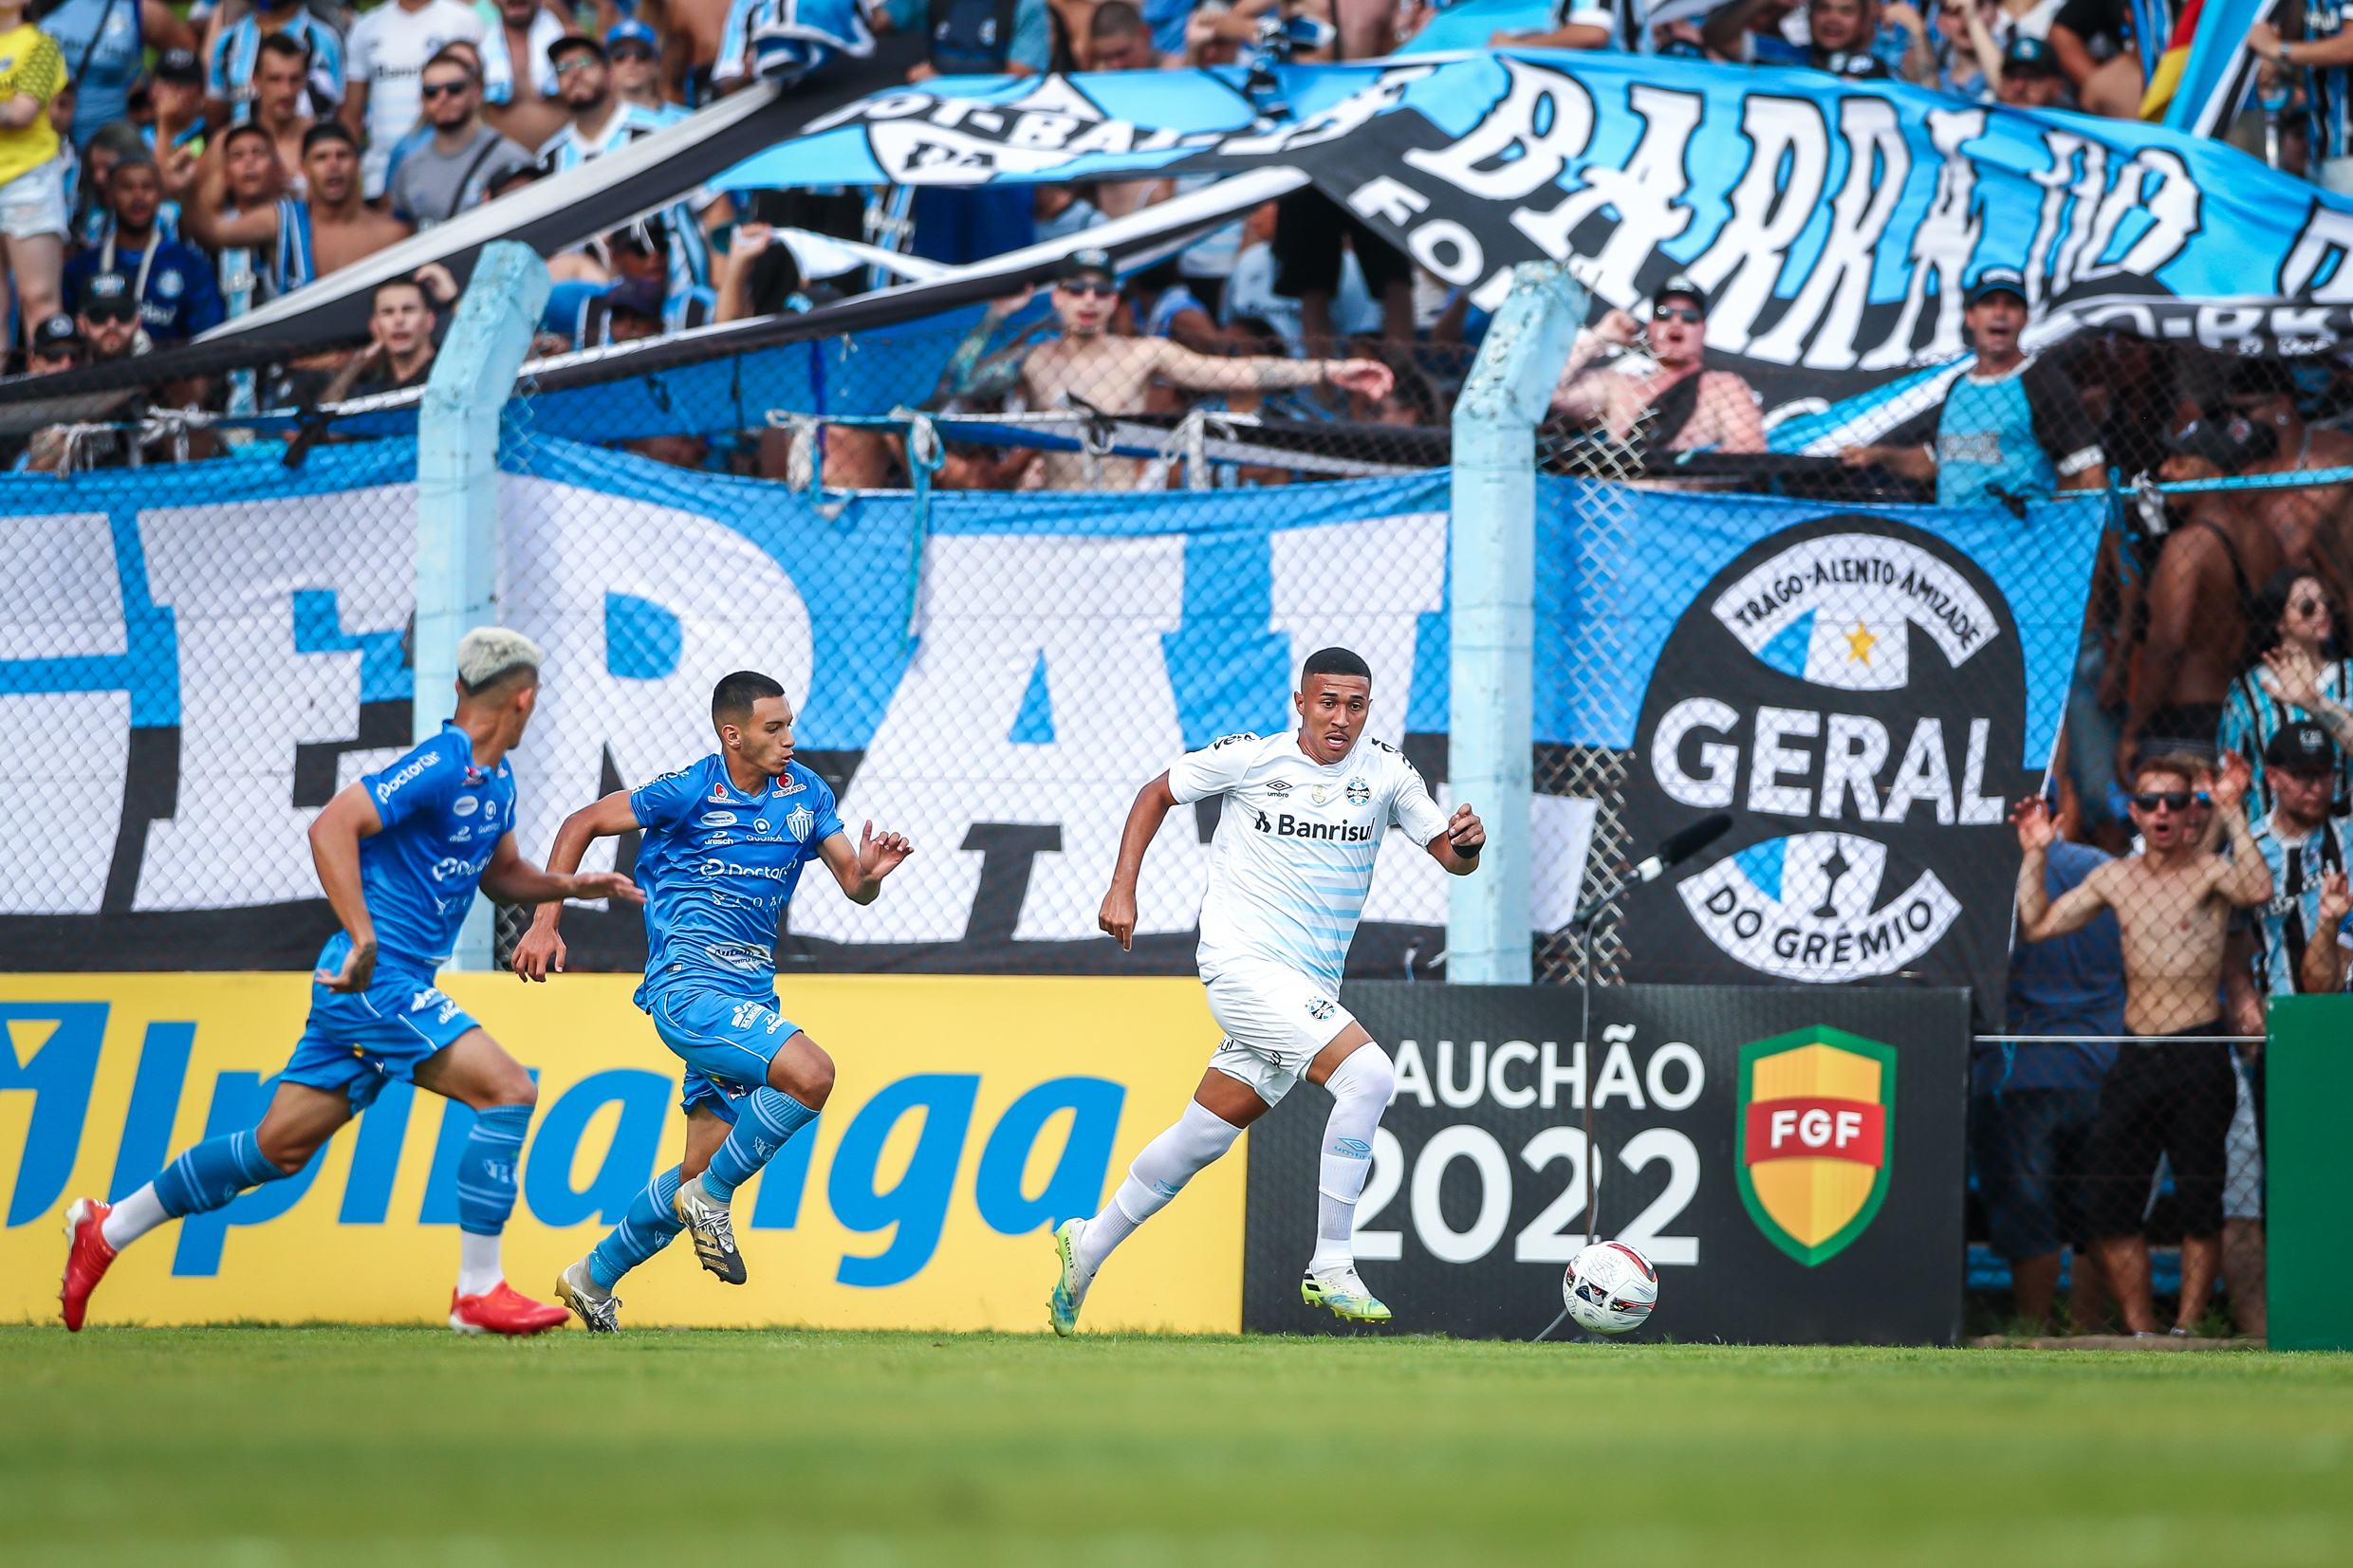 Fortaleza vs America MG: A Clash of Brazilian Football Titans